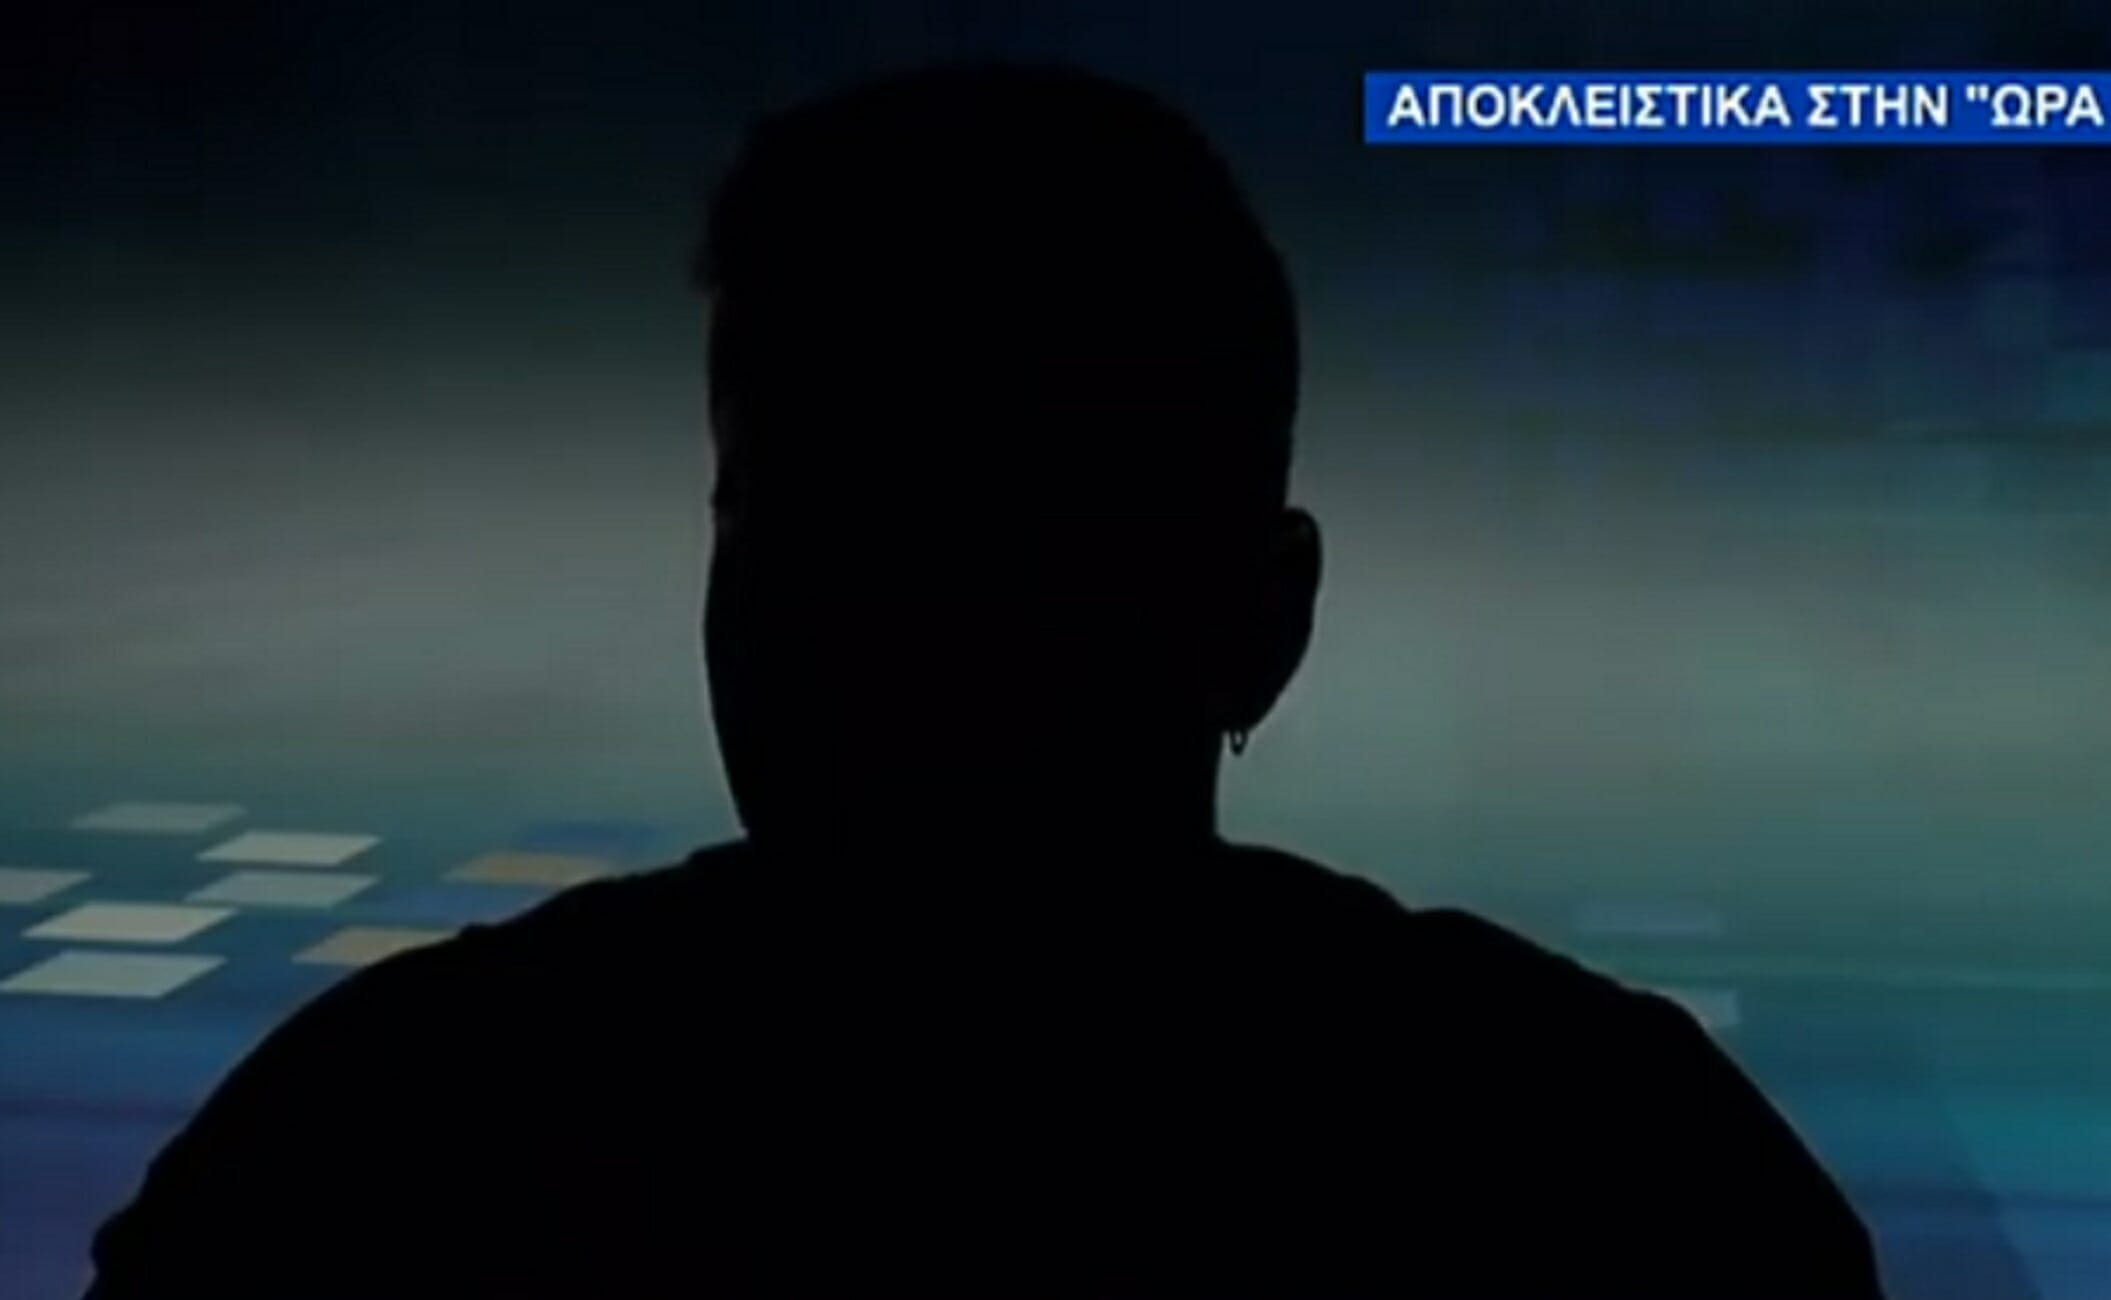 Κρήτη: “Σκεφτόμουν κάθε μέρα να αυτοκτονήσω”! Το διαδίκτυο, ο εθισμός και το μεγάλο αδιέξοδο (Βίντεο)